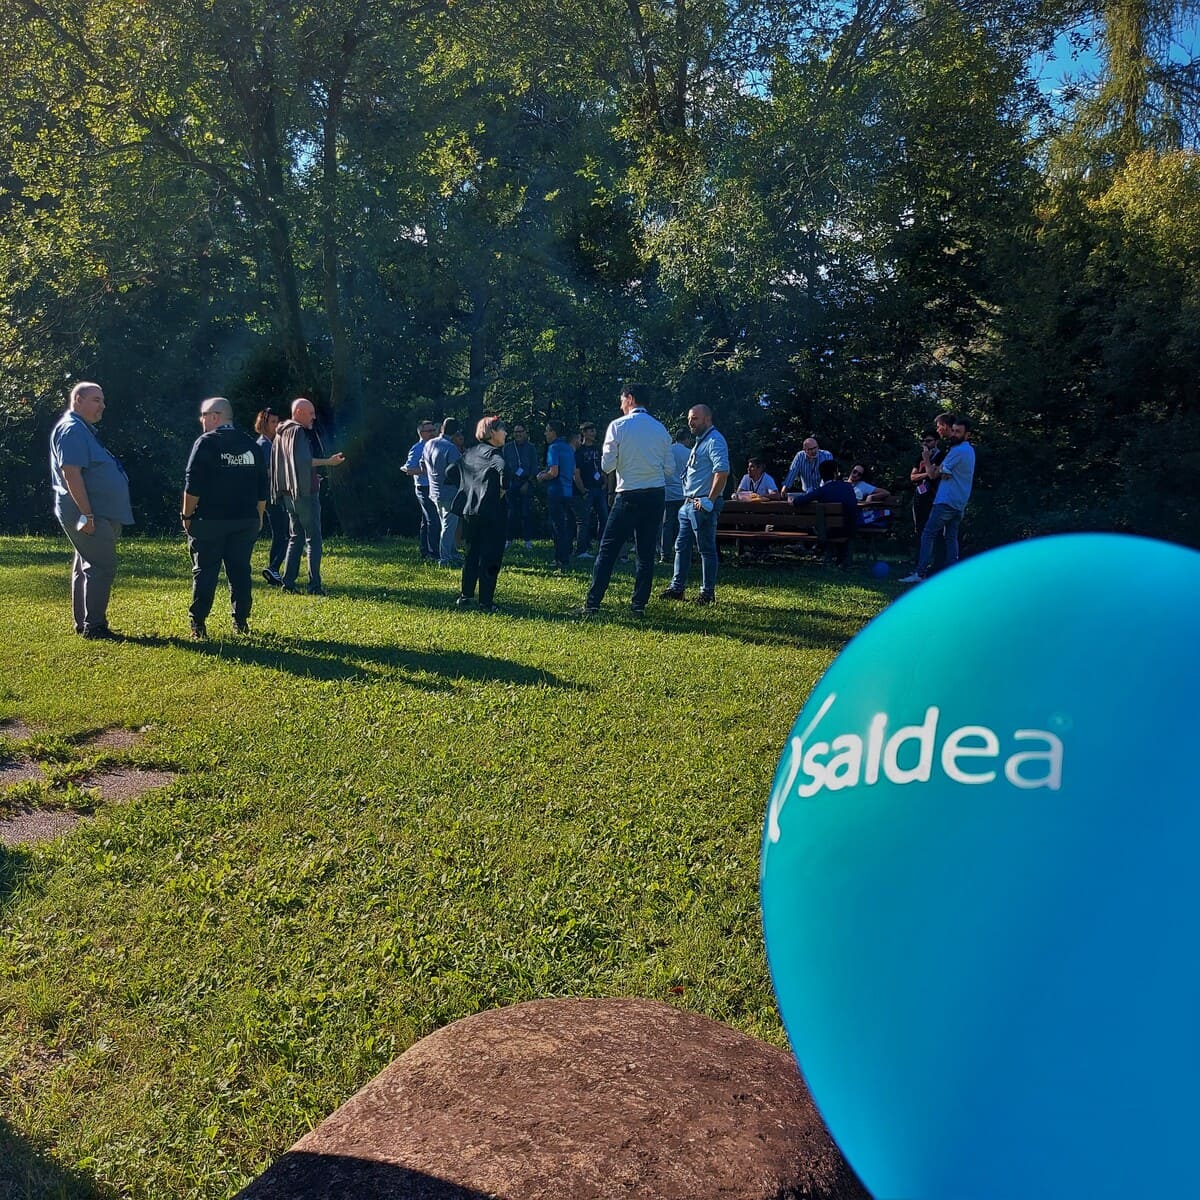 Palloncino blu con logo Saidea in evidenza, dietro un prato verde con i collaboratori di Saidea intenti a chiacchierare